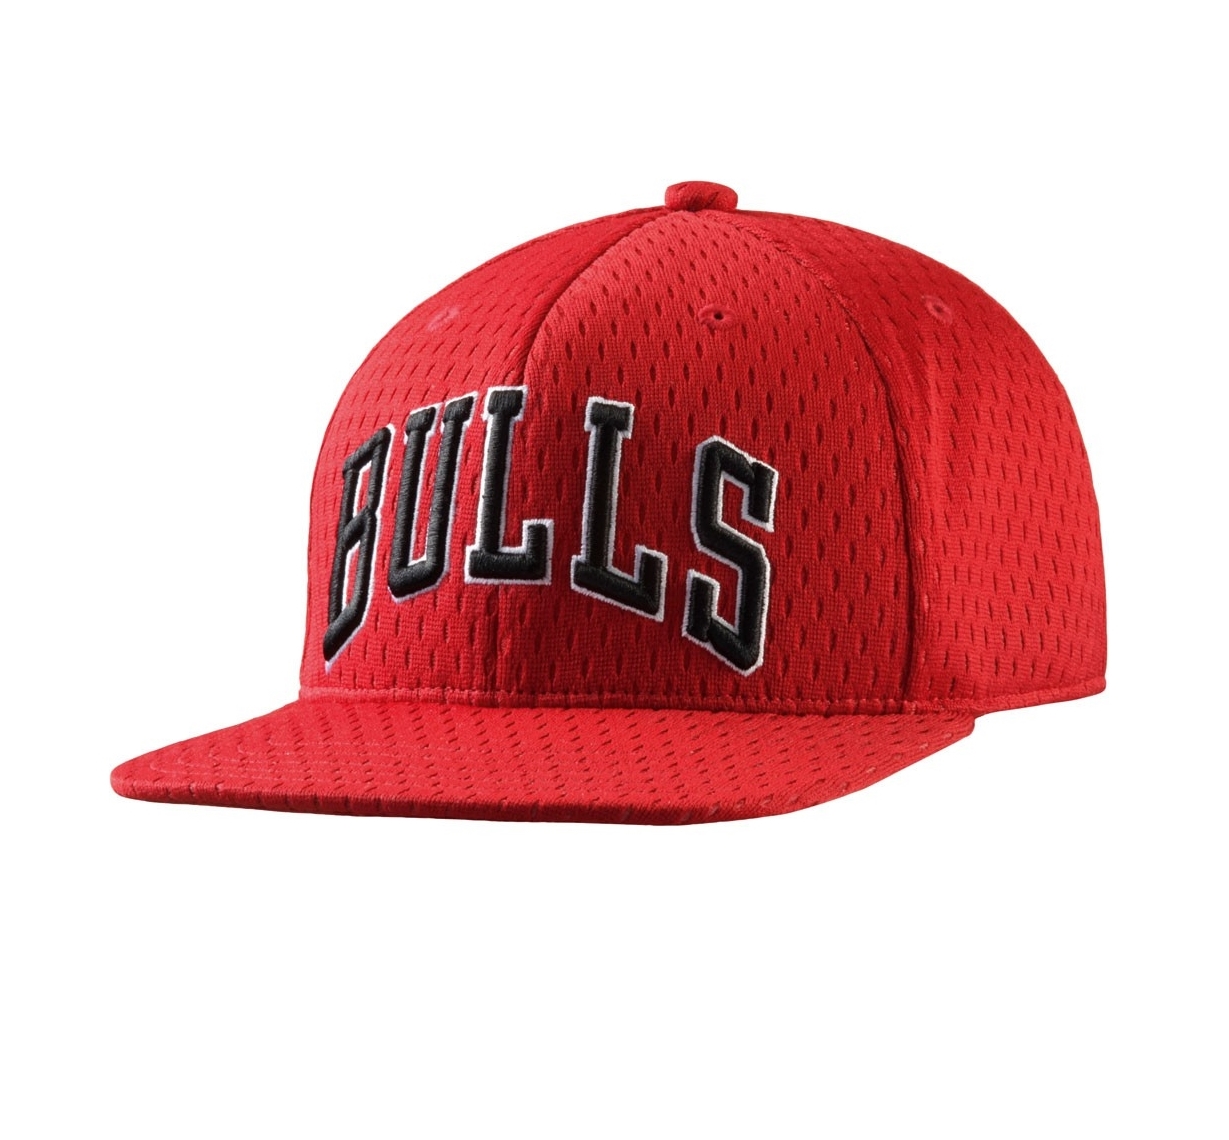 Adidas Originals NBA Gorra Mesh Bulls (rojo/negro/blanco